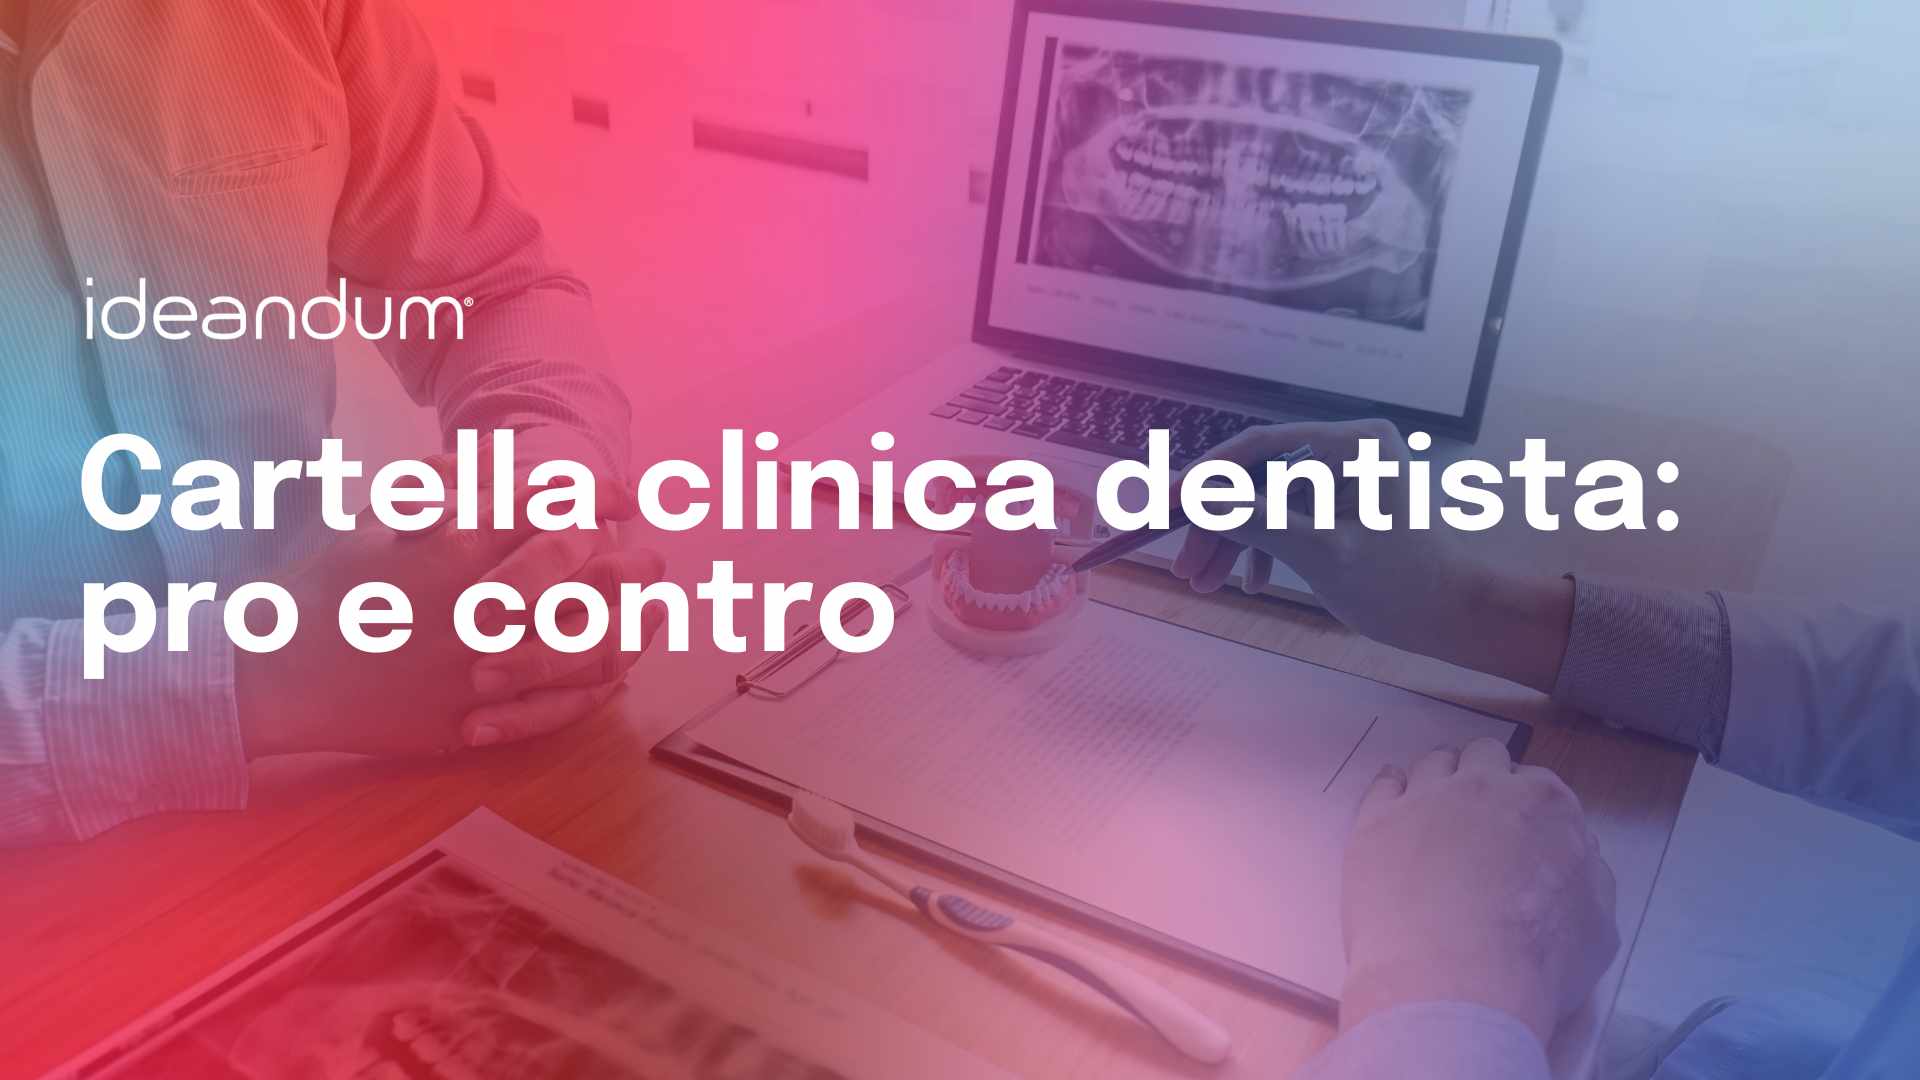 Cartella clinica dentista pro e contro | Ideandum